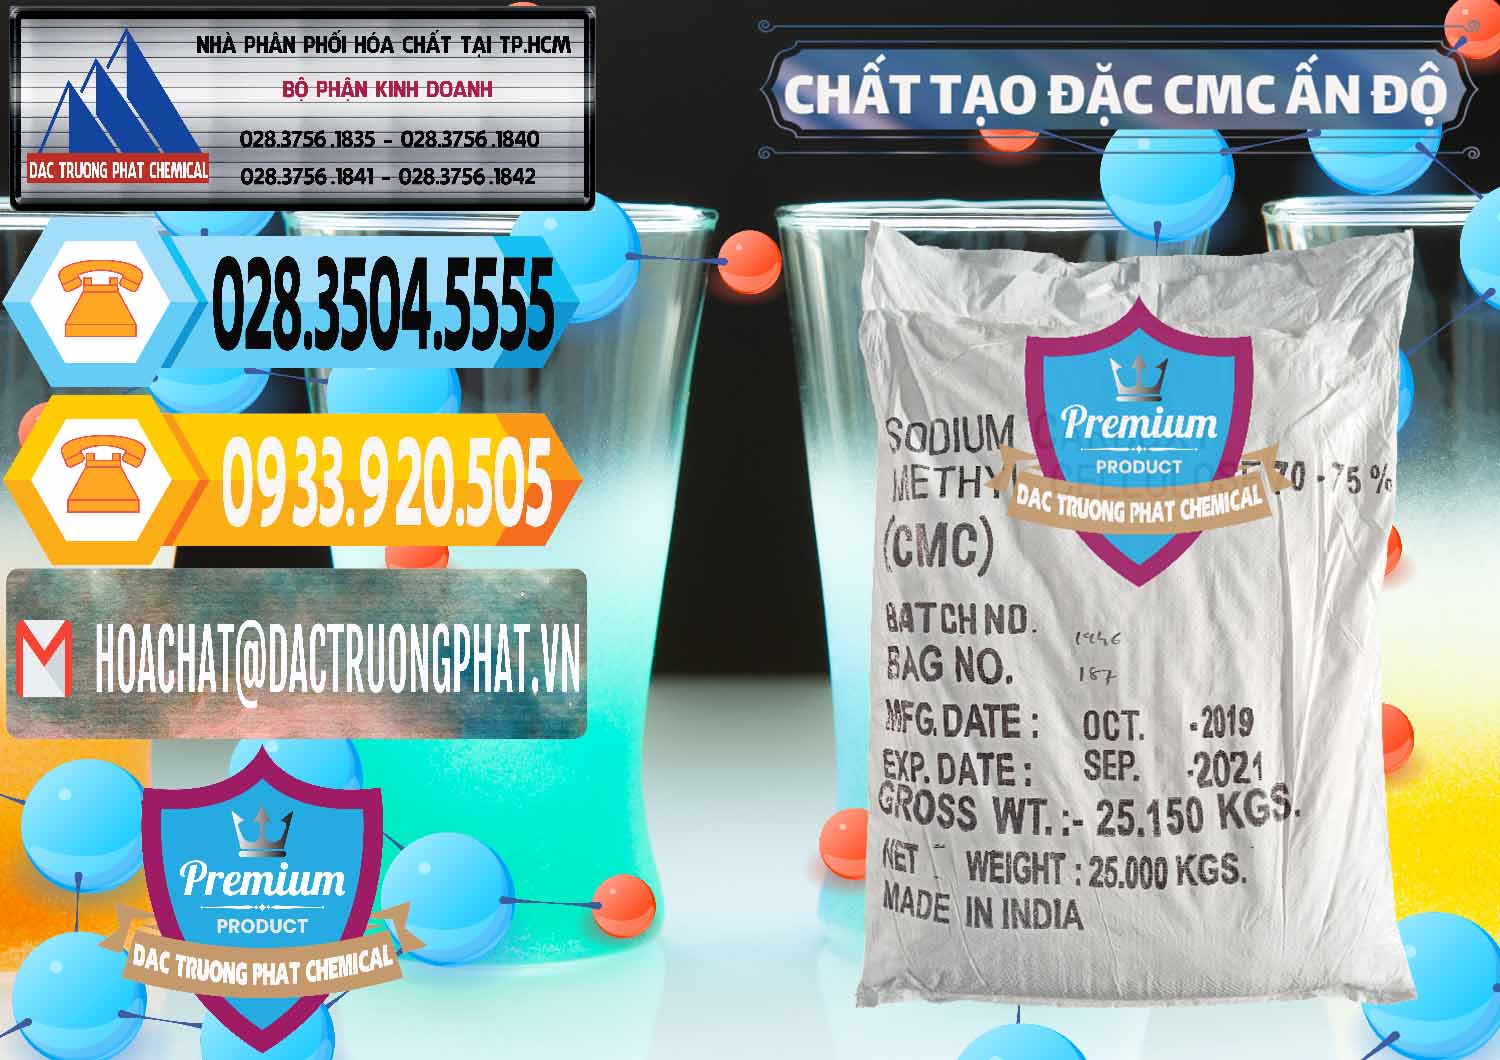 Kinh doanh - bán Chất Tạo Đặc CMC - Carboxyl Methyl Cellulose Ấn Độ India - 0044 - Công ty cung cấp _ nhập khẩu hóa chất tại TP.HCM - hoachattayrua.net